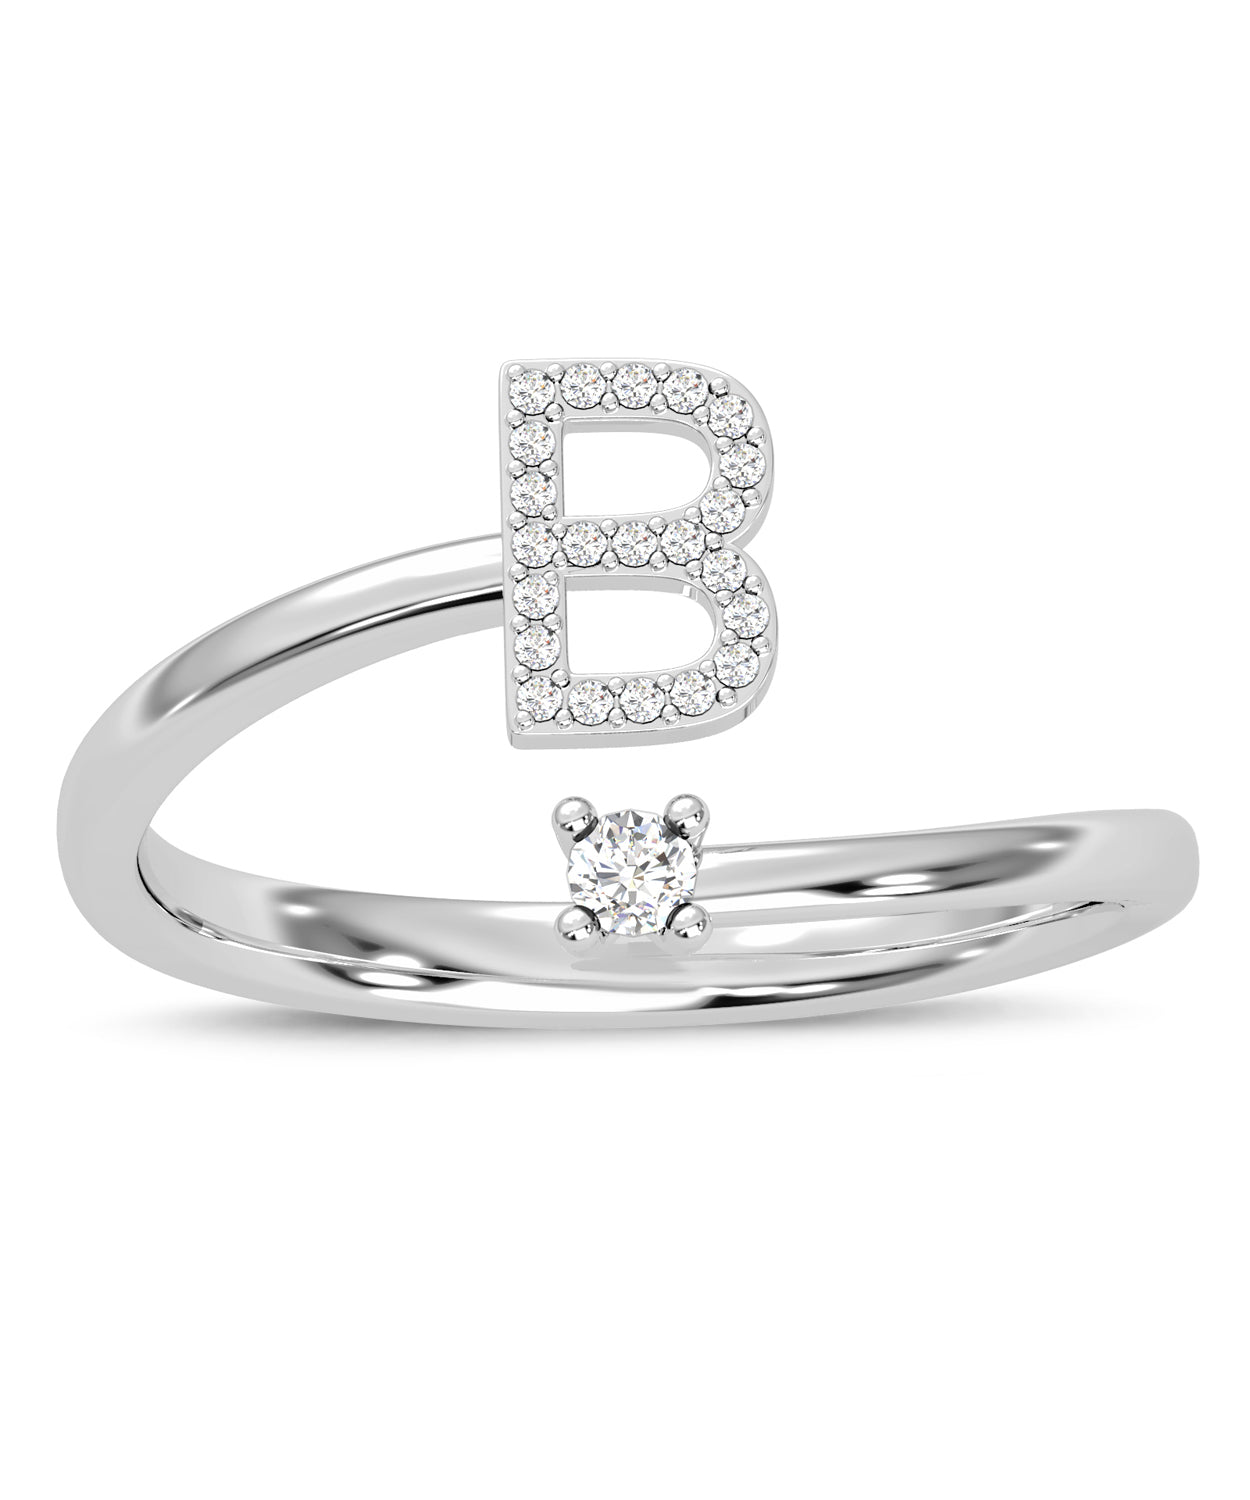 ESEMCO Diamond 18k White Gold Letter B Initial Open Ring View 3